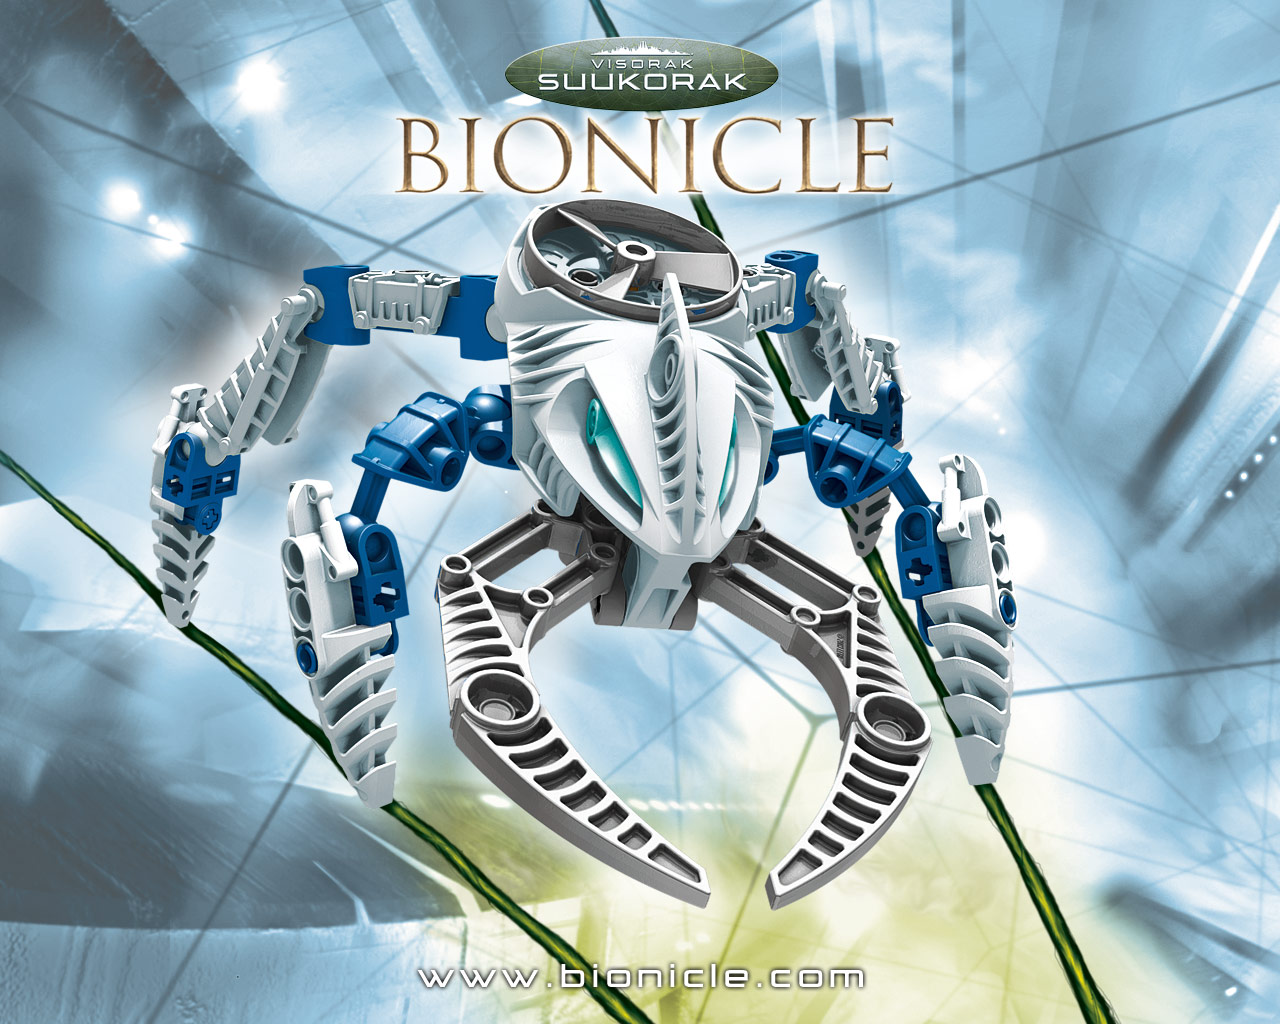 fond d'écran bionicle,la technologie,personnage fictif,robot,machine,jeux